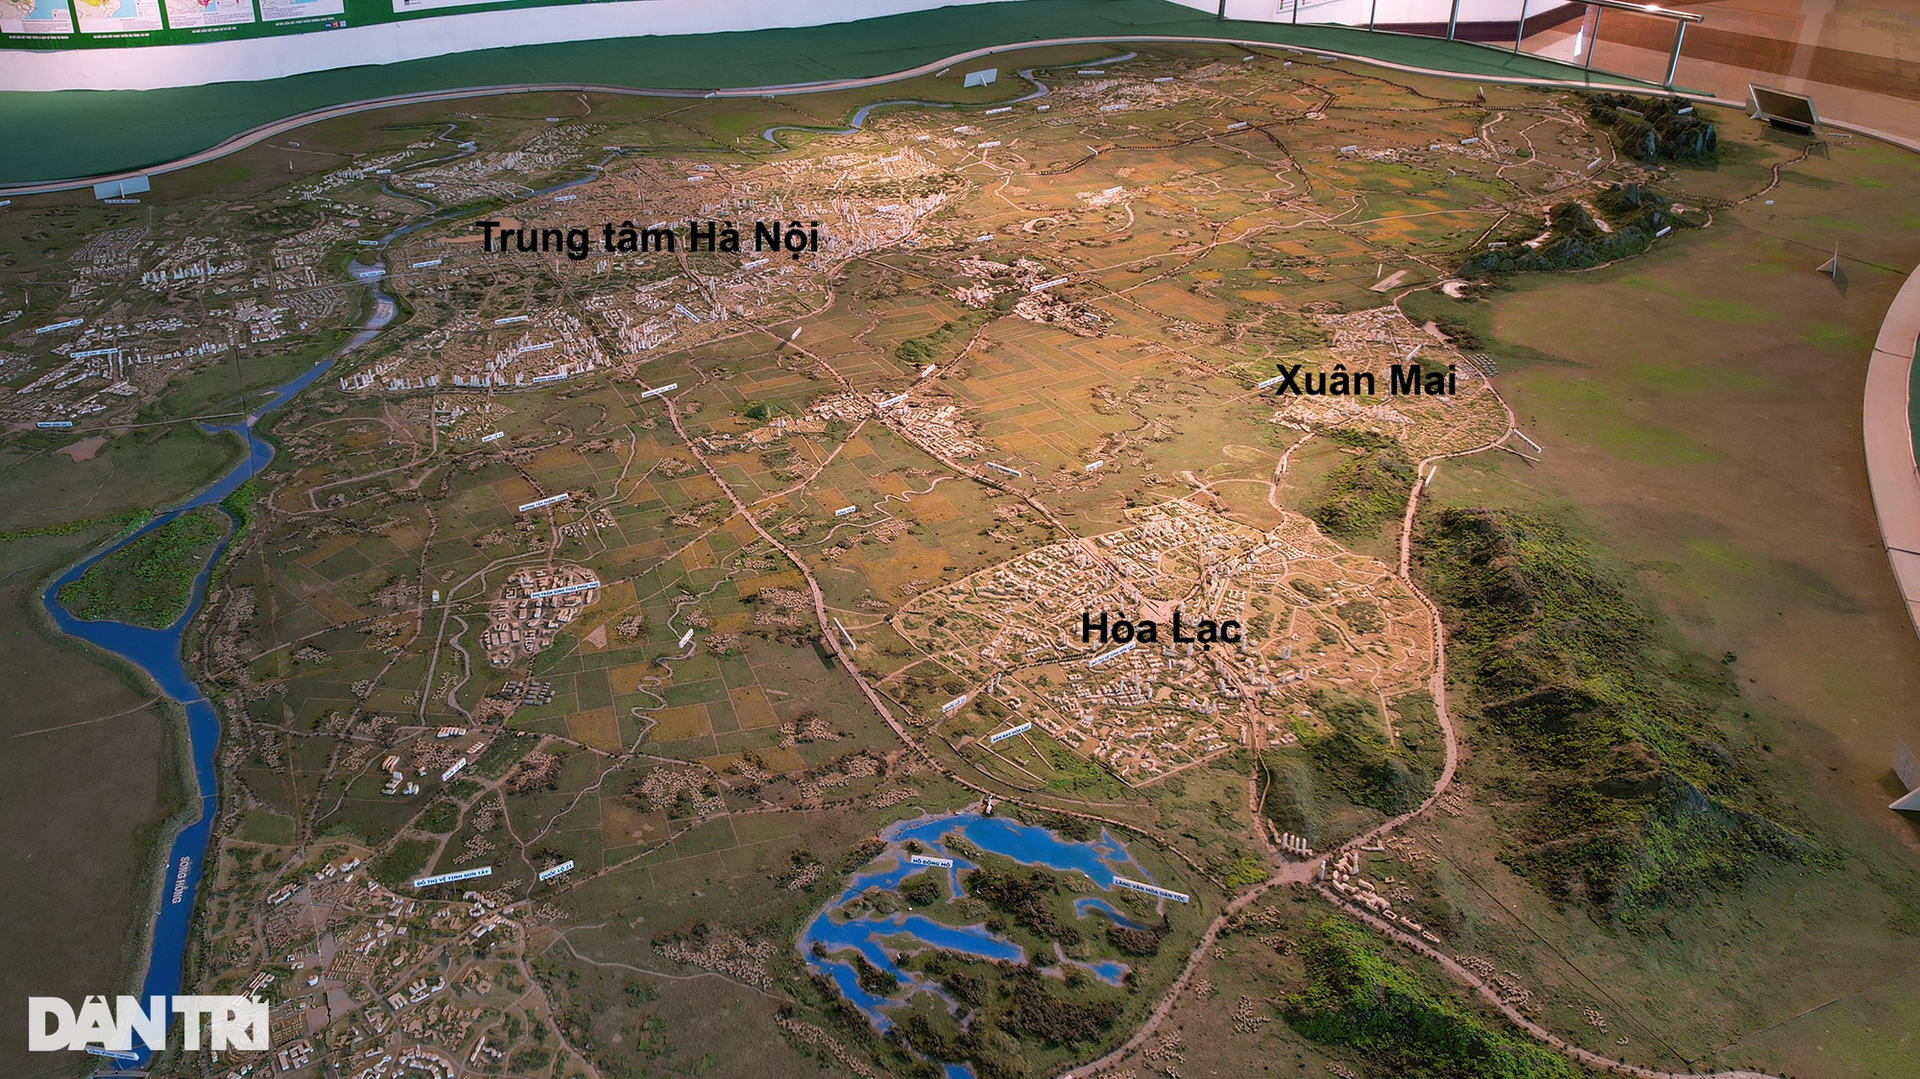 Hiện trạng 2 thành phố tương lai bao quanh nội đô Hà Nội - 2